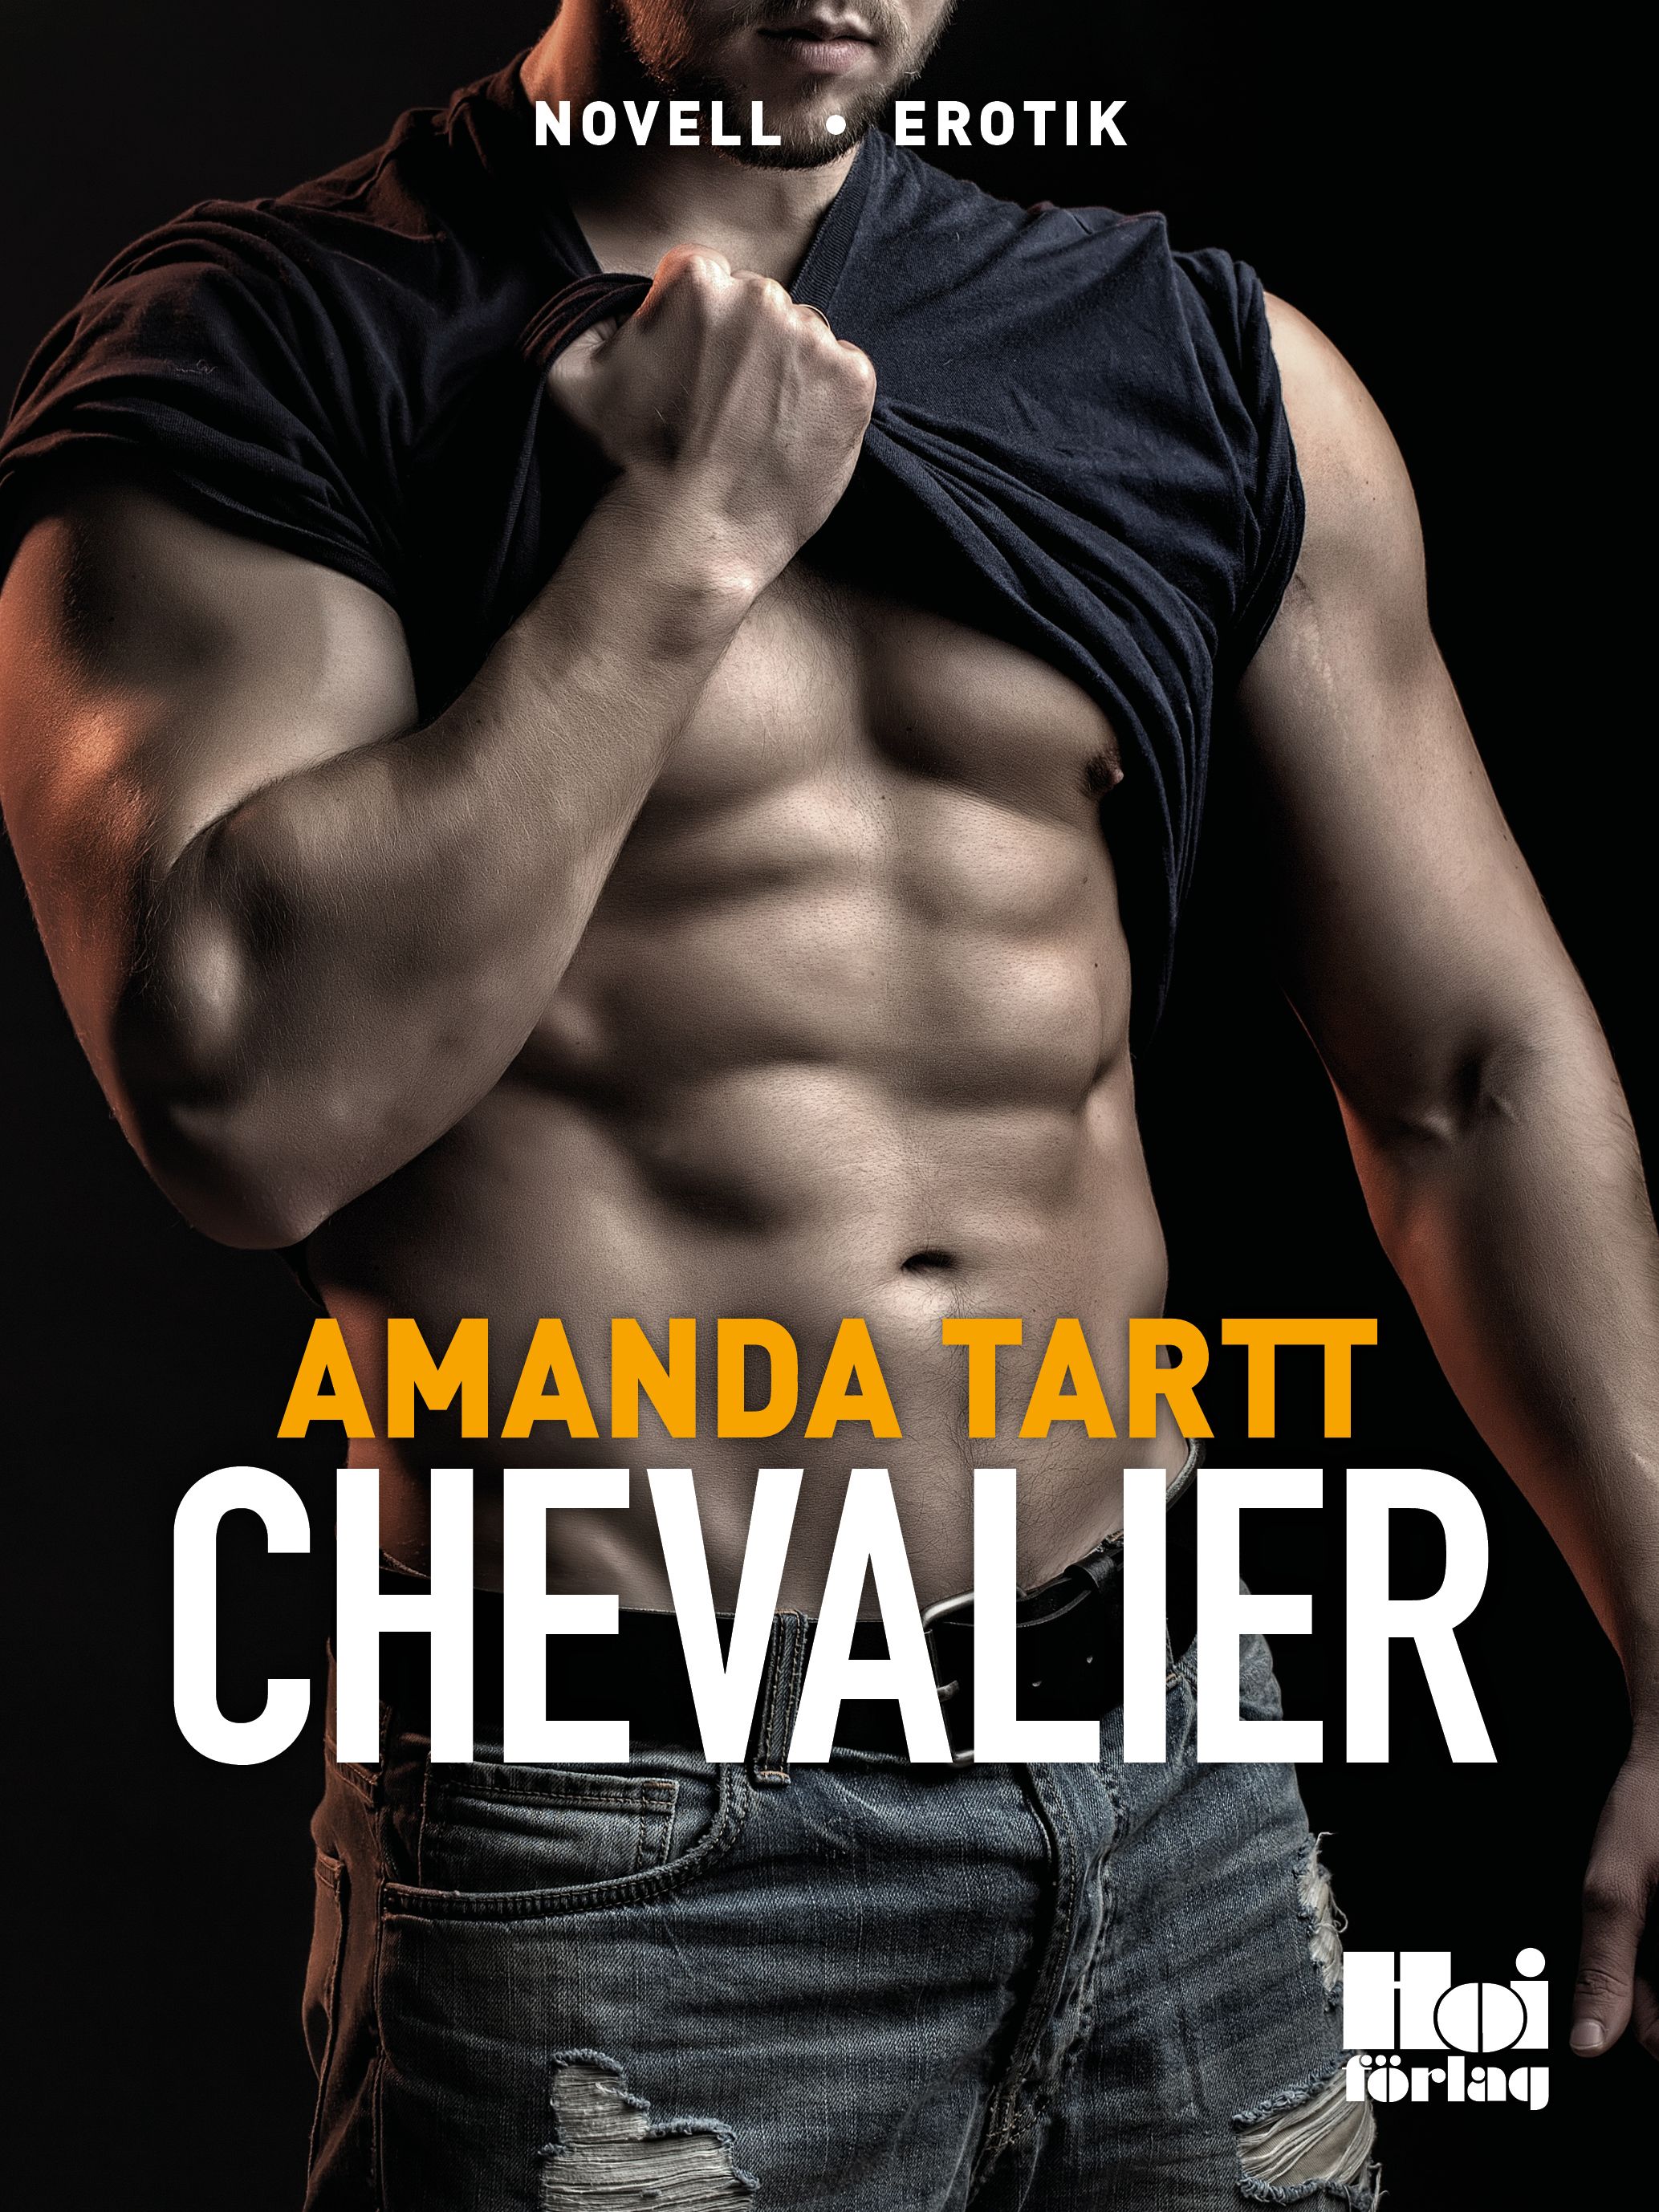 Chevalier, e-bog af Amanda Tartt